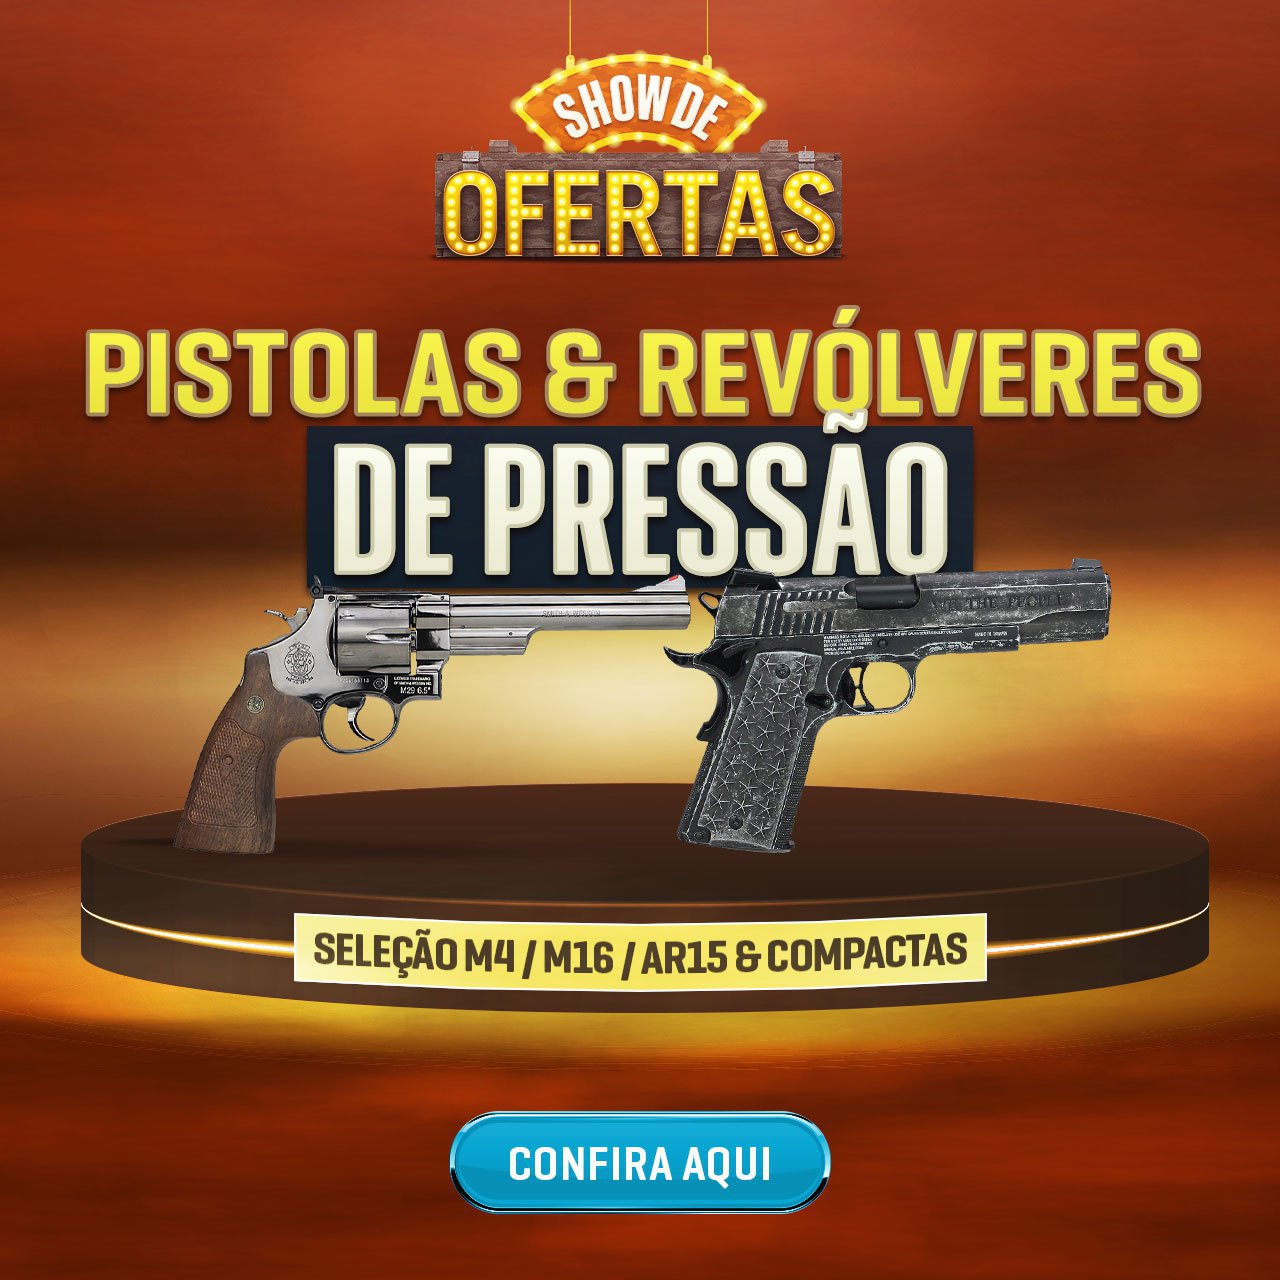 Pistolas & Revolveres de Pressão - um festival de preço baixo!